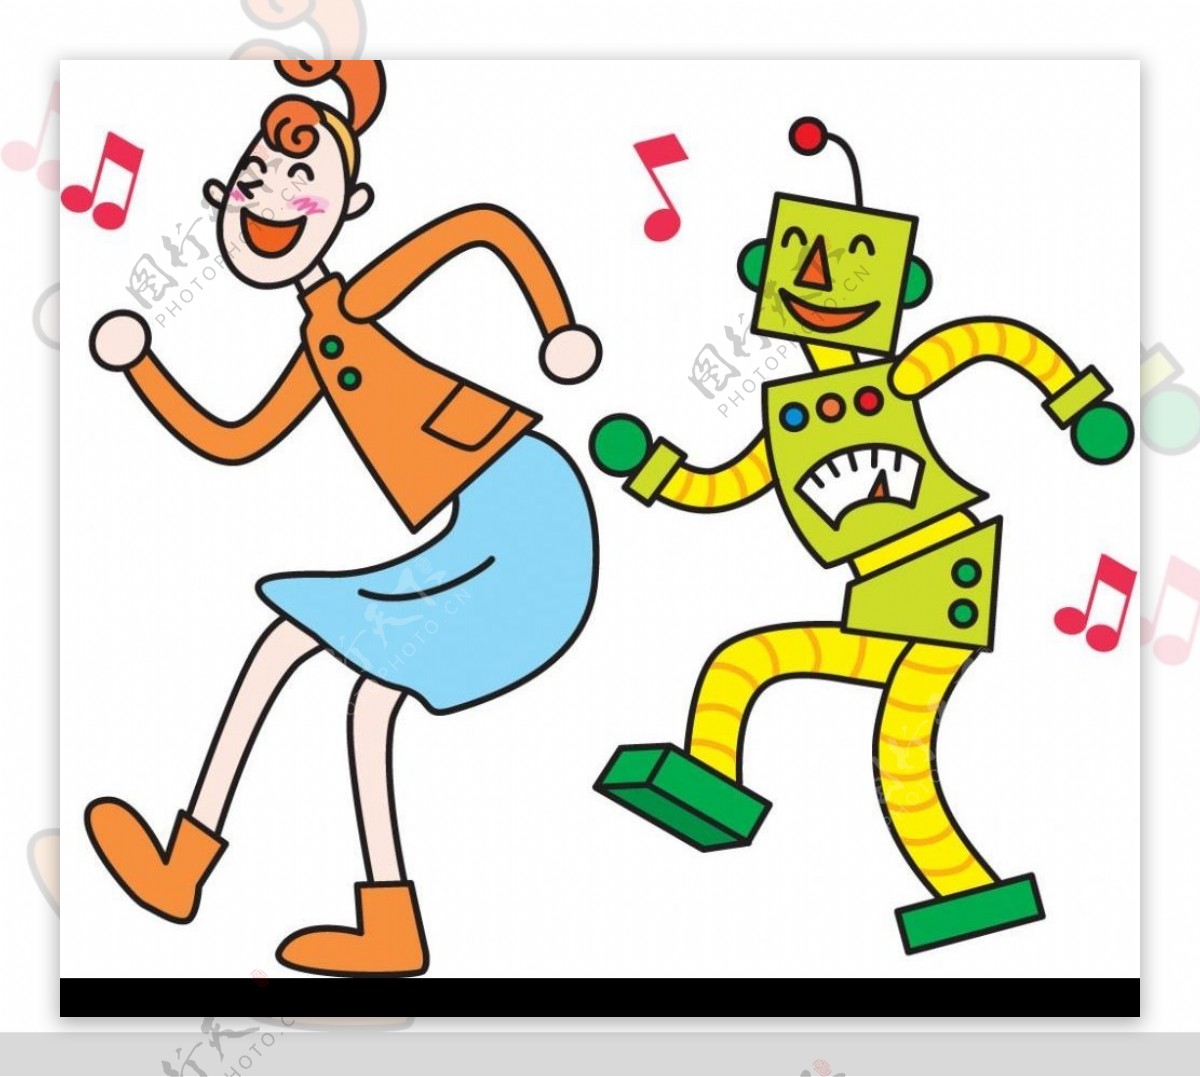 机器人与人跳舞图片